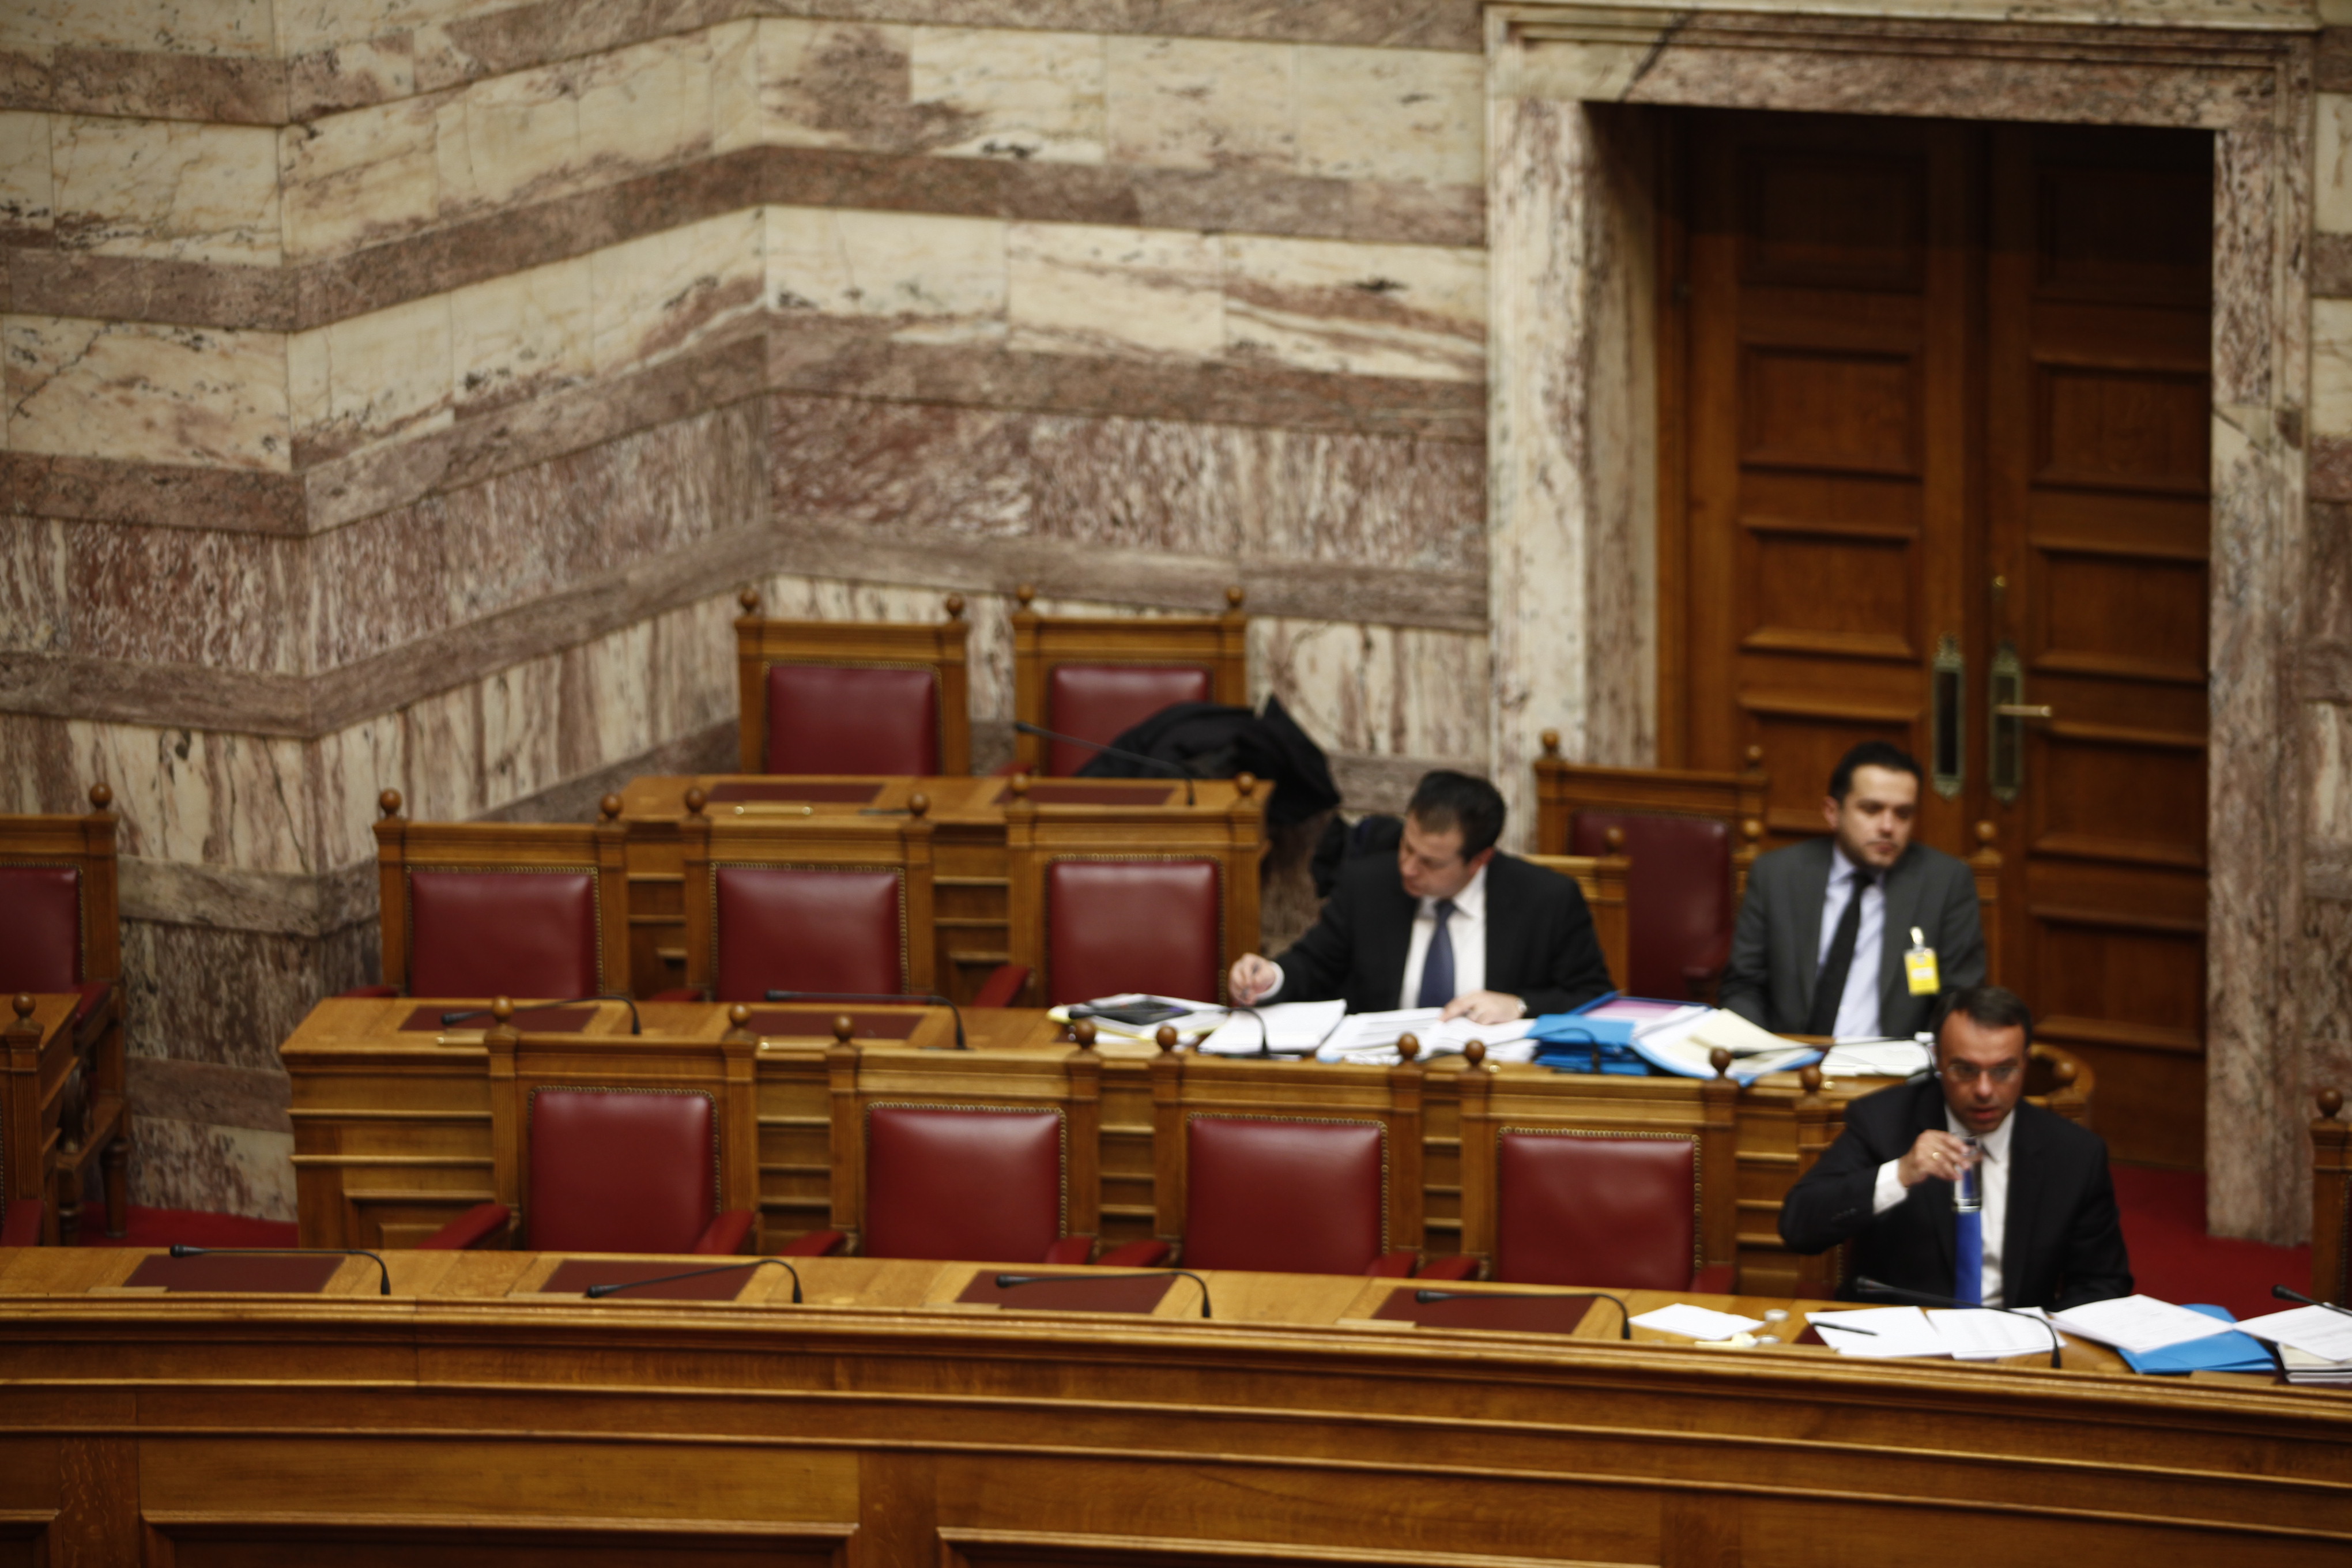 Μόνος και ο Χρήστος Σταϊκούρας στα κυβερνητικά έδρανα - Νωρίτερα ήταν εκεί και ο Κυριάκος Μητσοτάκης - ΦΩΤΟΓΡΑΦΙΑ EUROKINISSI